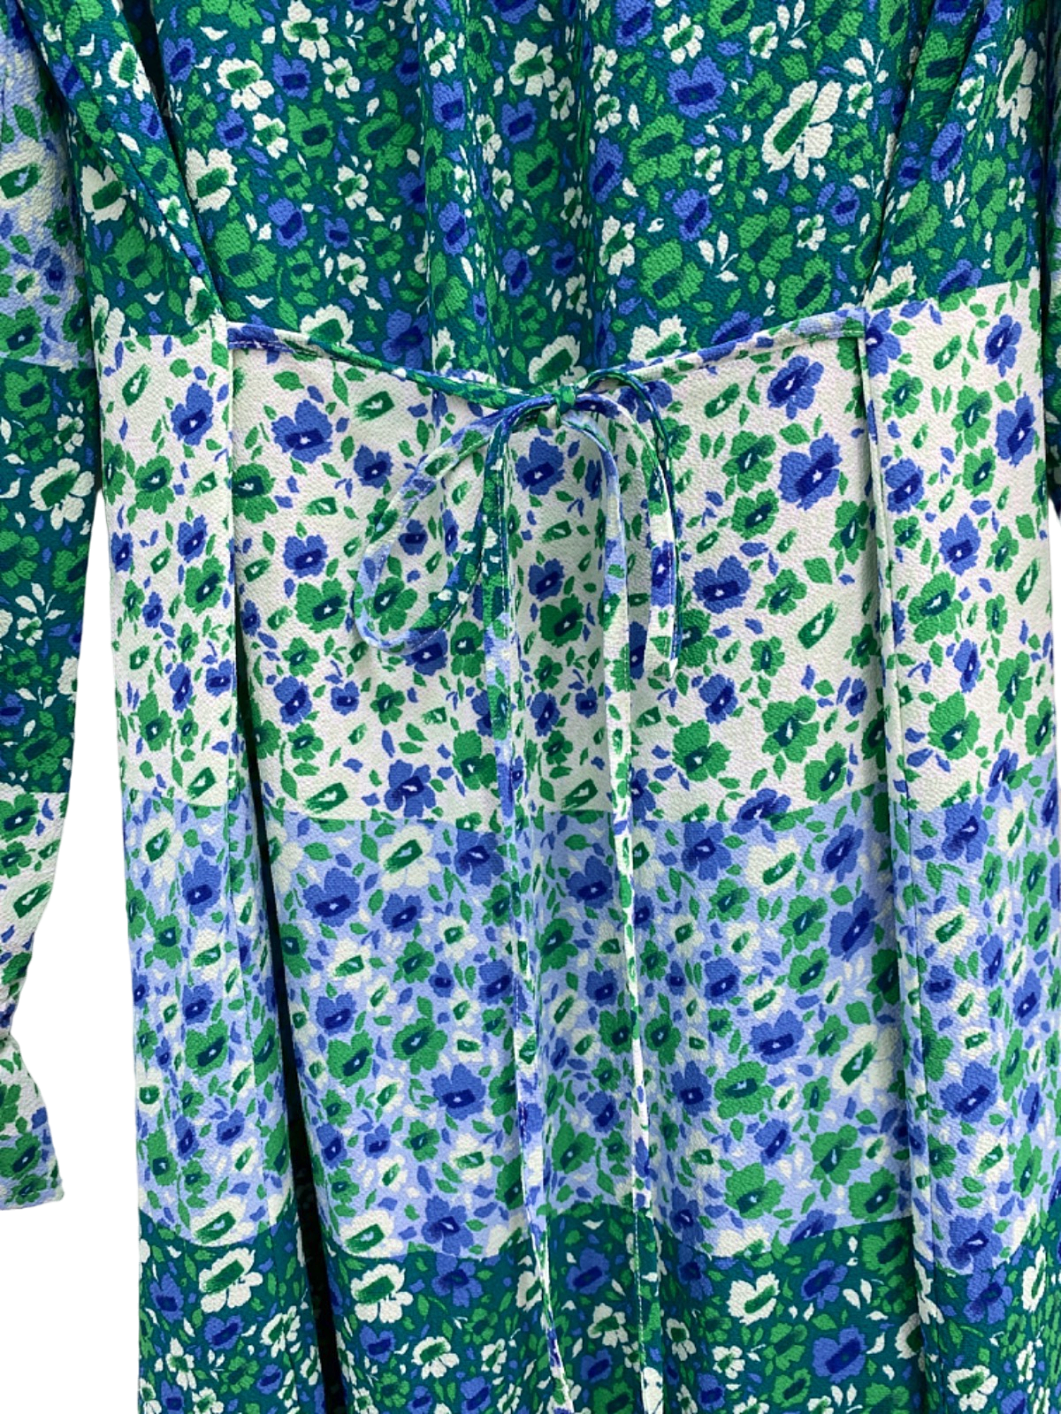 Baum Und Pferdgarten Green Blue Floral Midi Dress UK 12